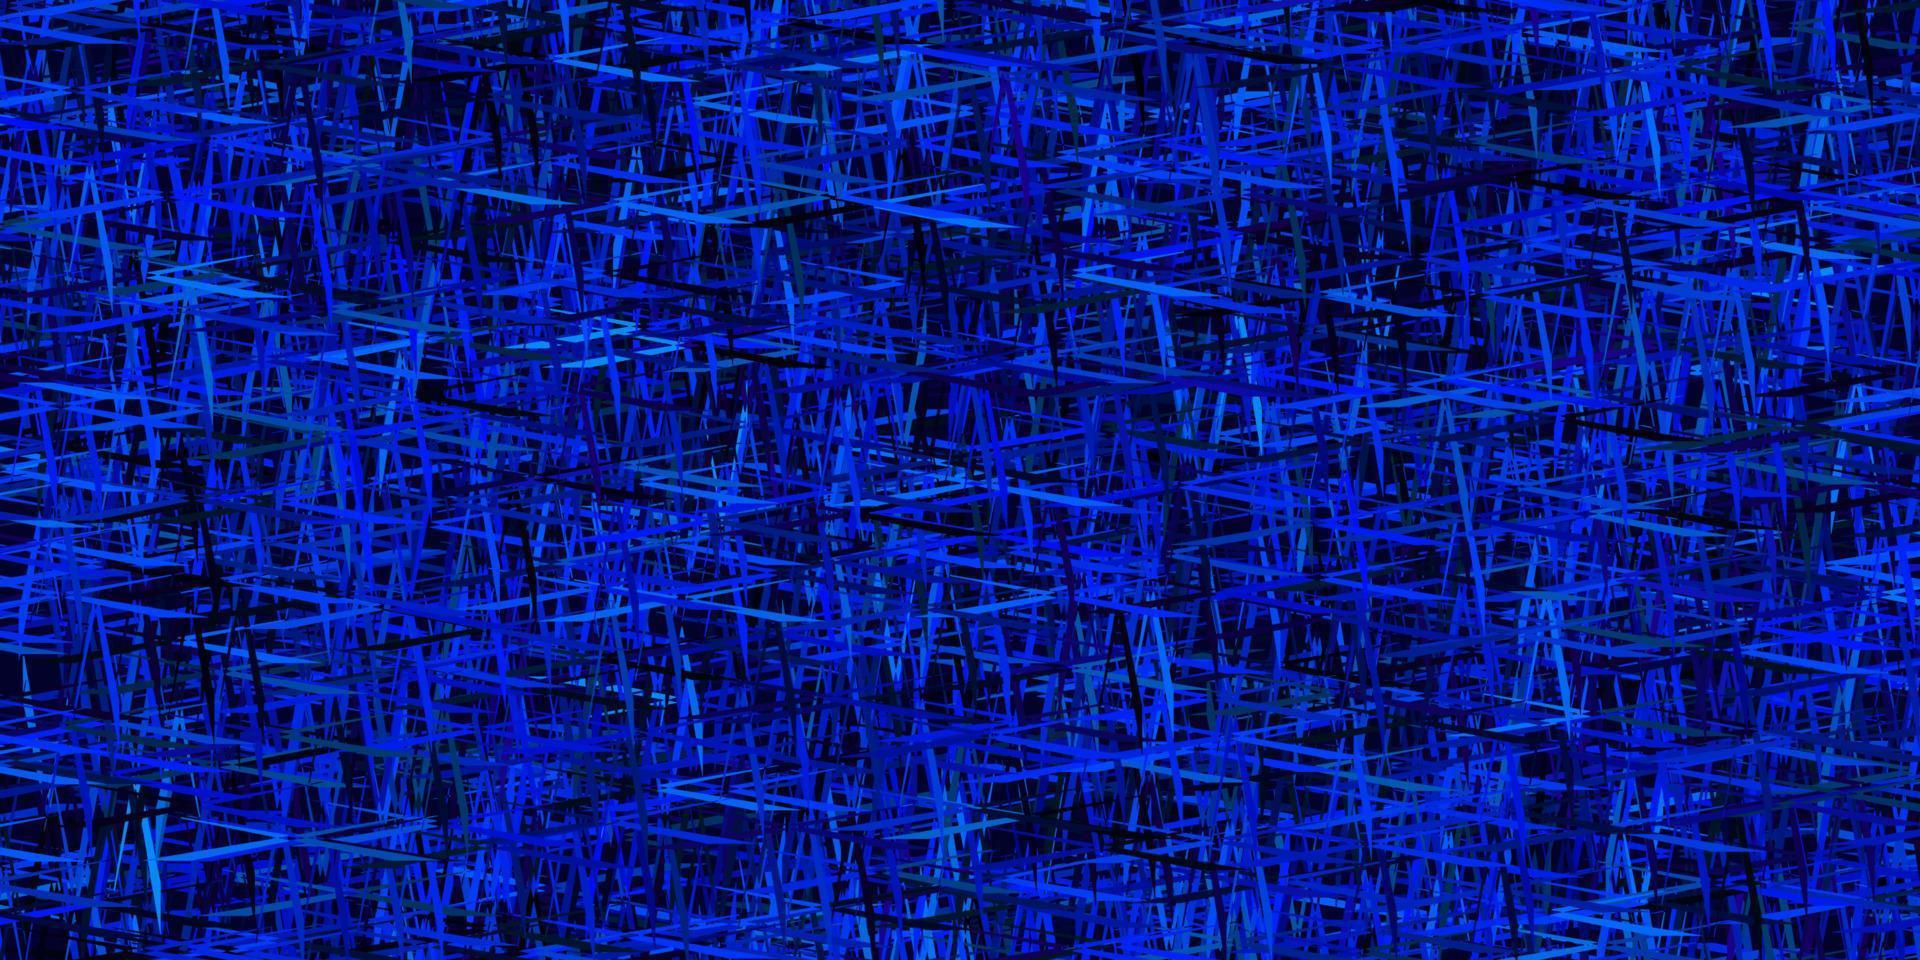 mörkrosa, blå vektormall med upprepade pinnar. vektor